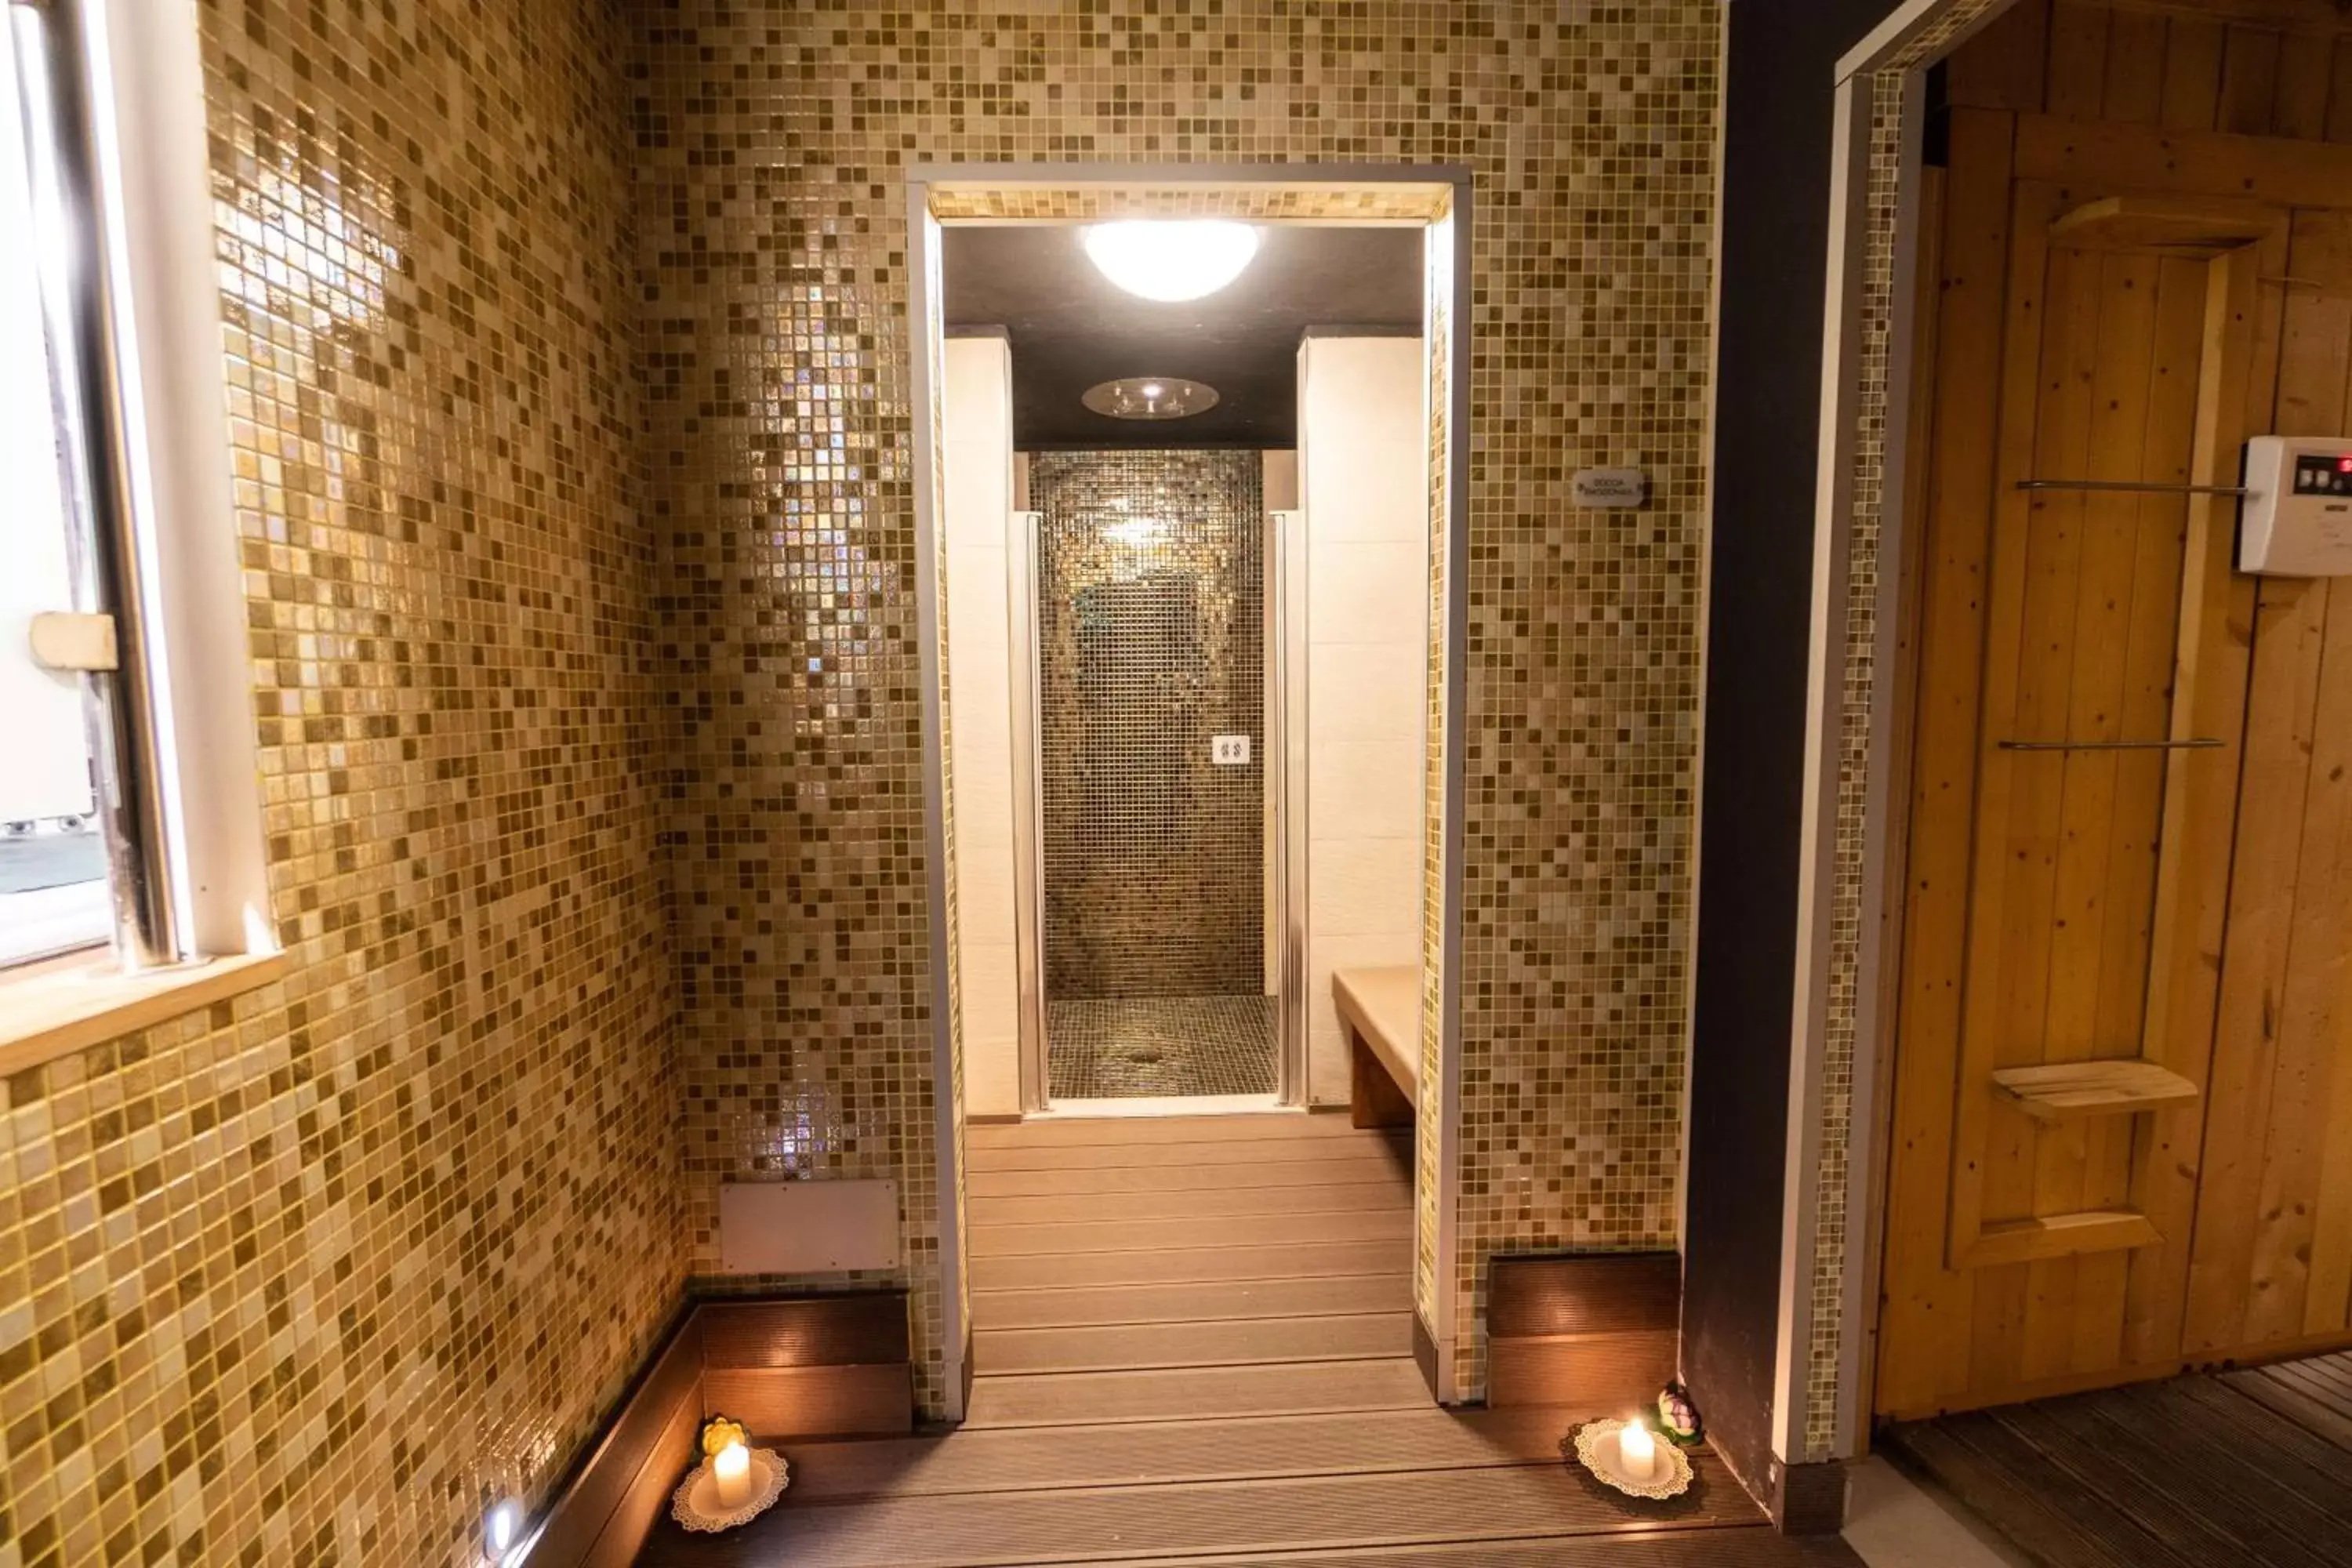 Spa and wellness centre/facilities, Bathroom in Best Western Plus Hotel Perla Del Porto